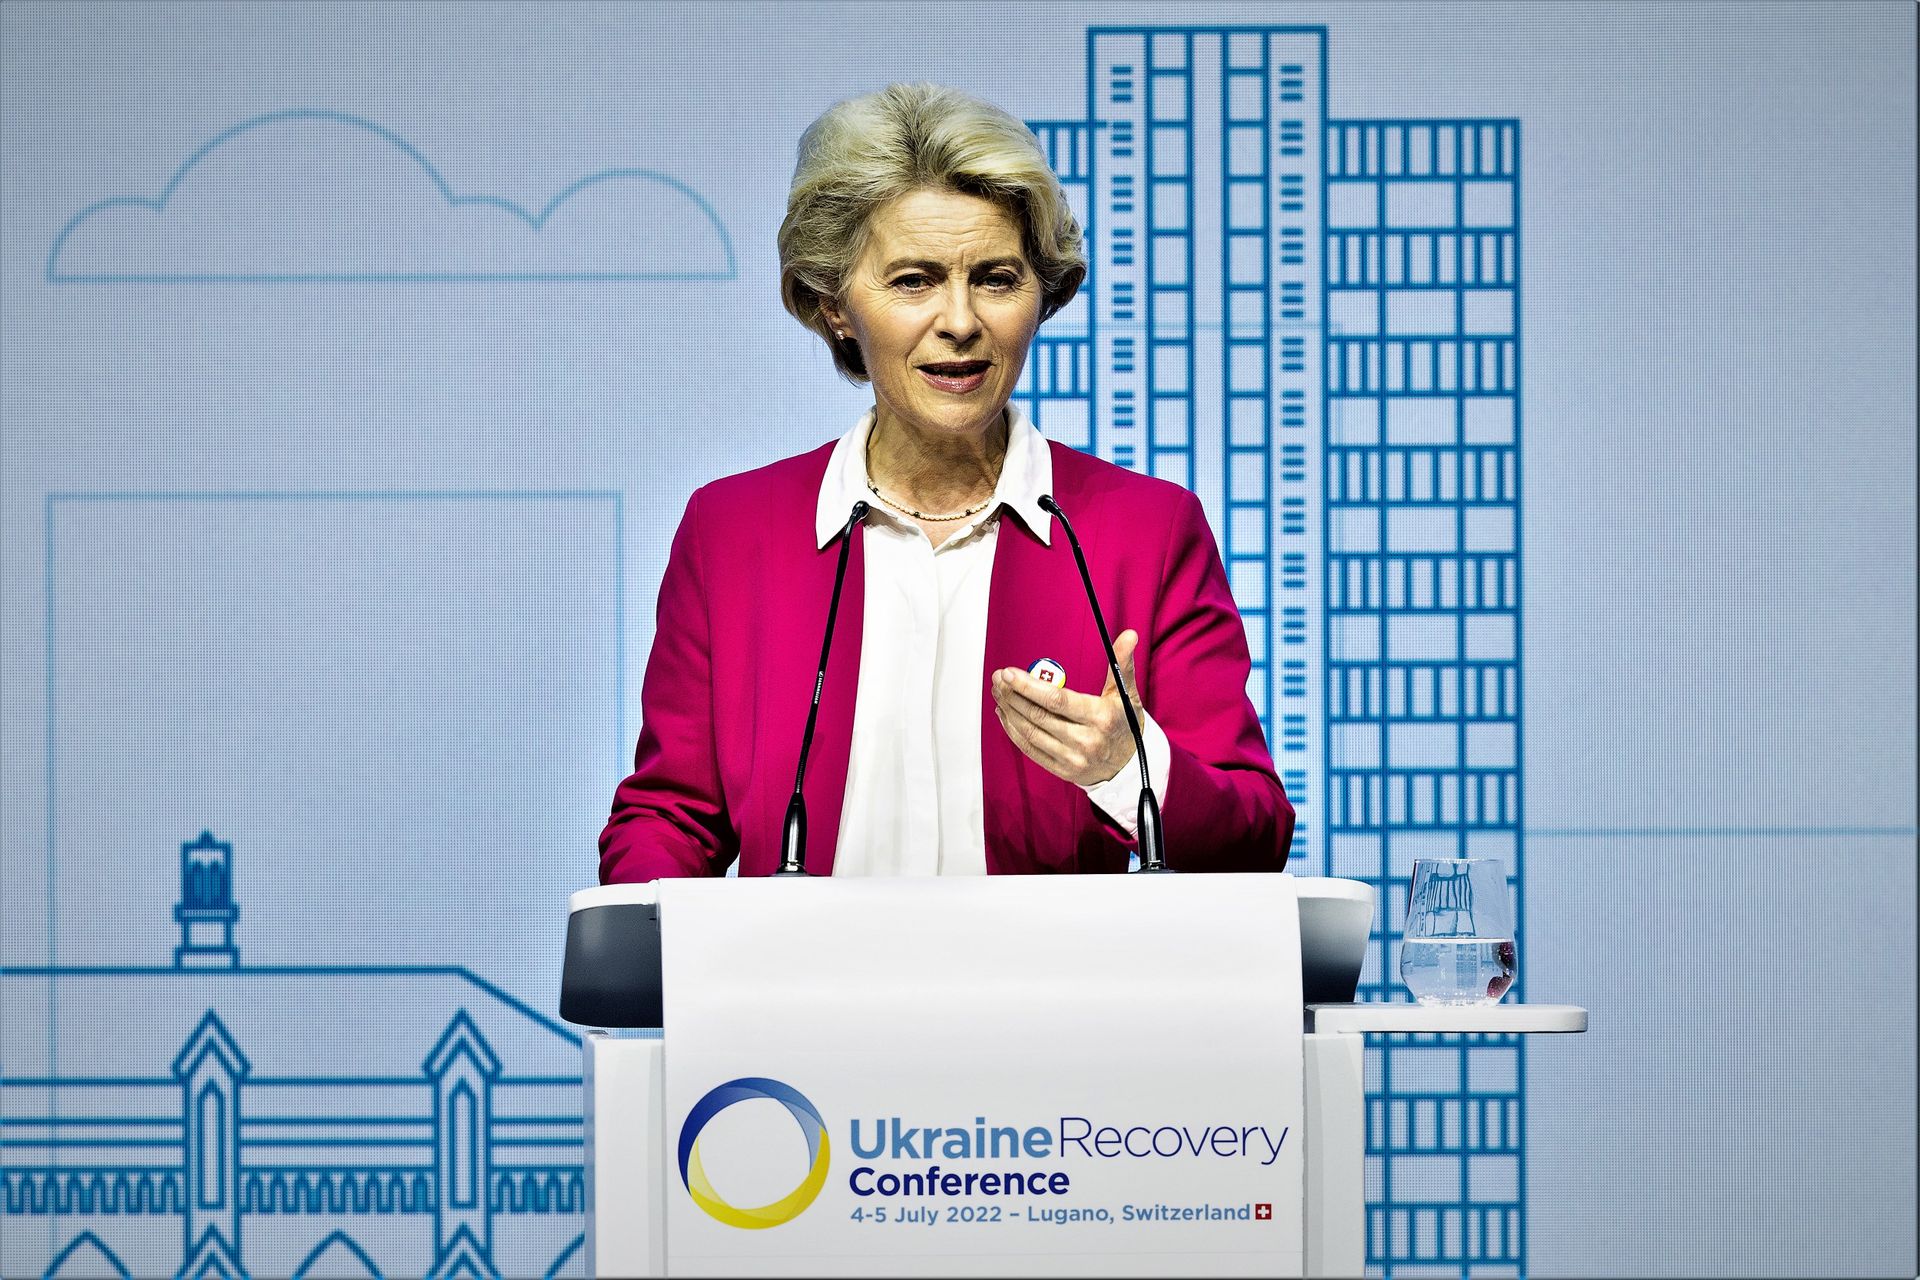 Ursula von der Leyen, Presidente della Commissione Europea, alla "Ukraine Recovery Conference" di Lugano il 4 e 5 luglio 2022